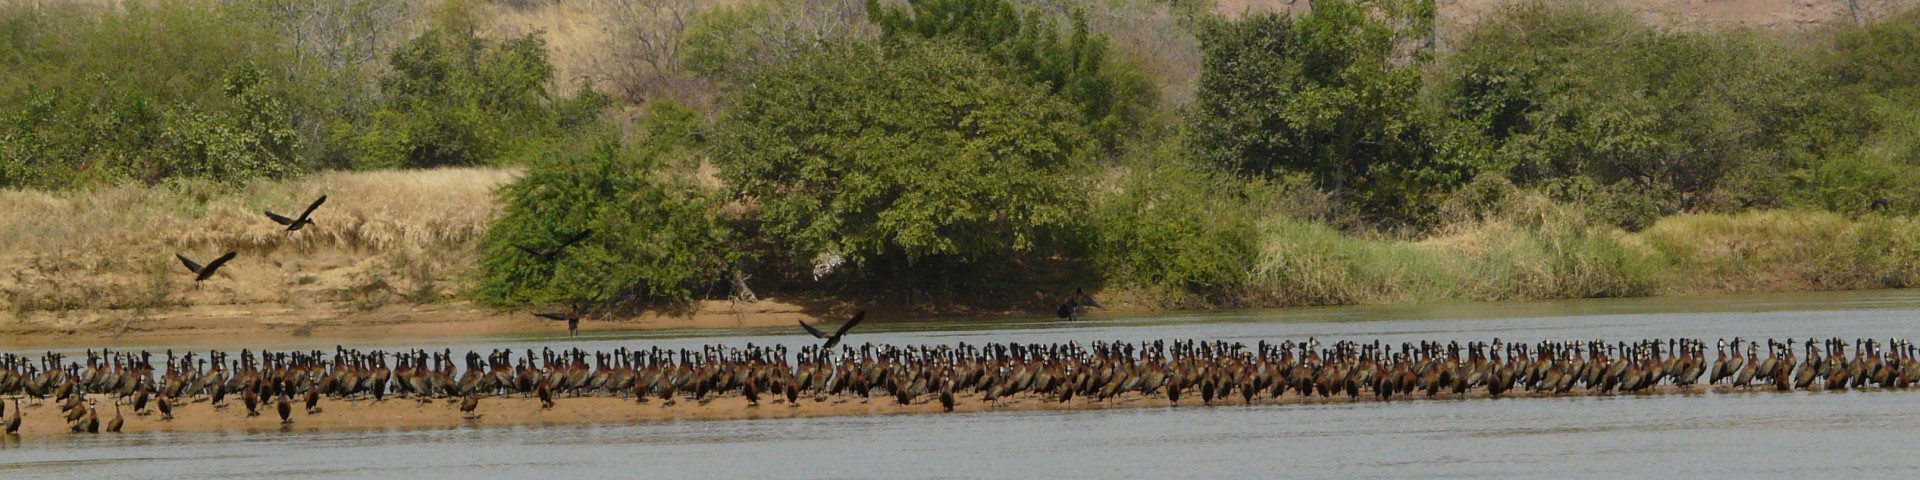 Nuée d’oiseaux rassemblés sur la rive d’un réservoir d’eau.